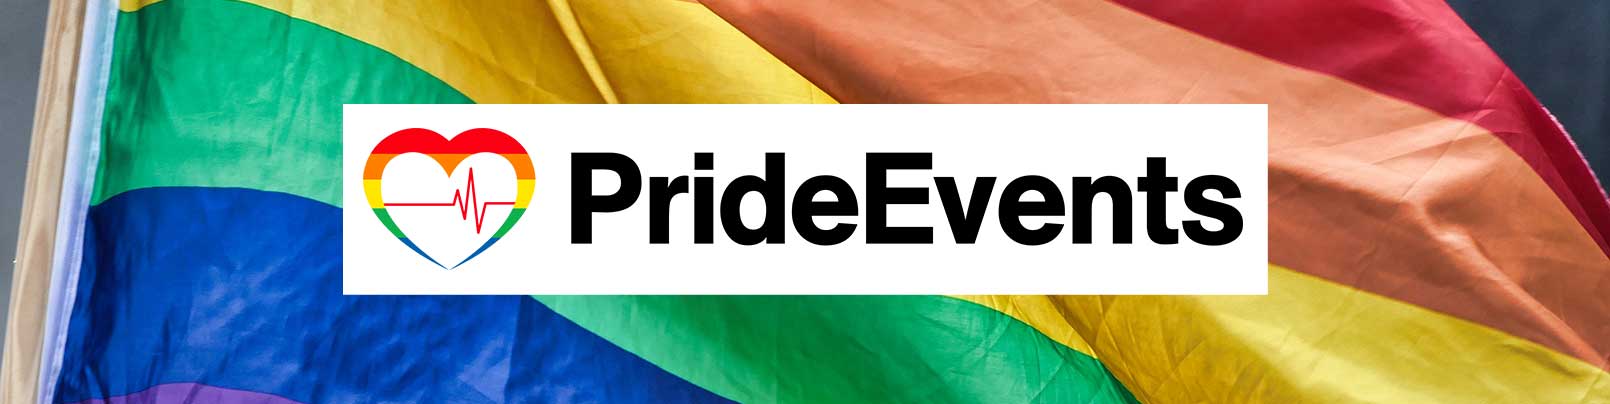 pride-events-banner-v2